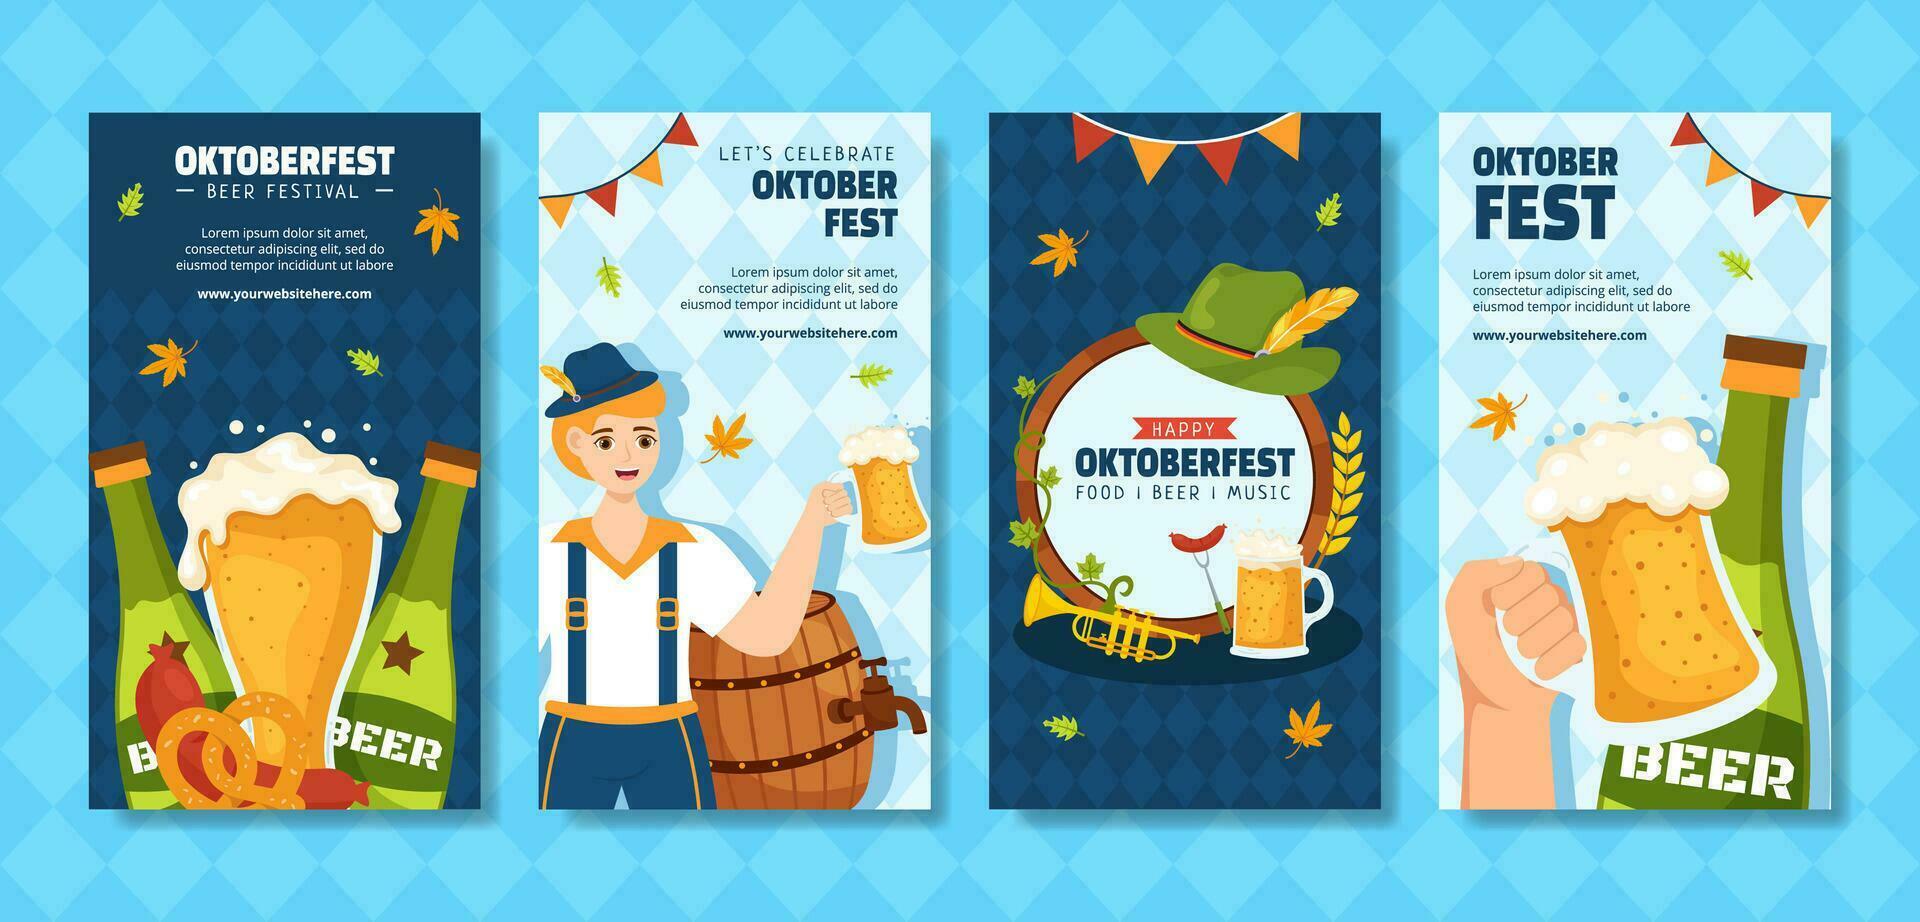 Oktoberfest cerveza festival social medios de comunicación cuentos plano dibujos animados mano dibujado plantillas antecedentes ilustración vector